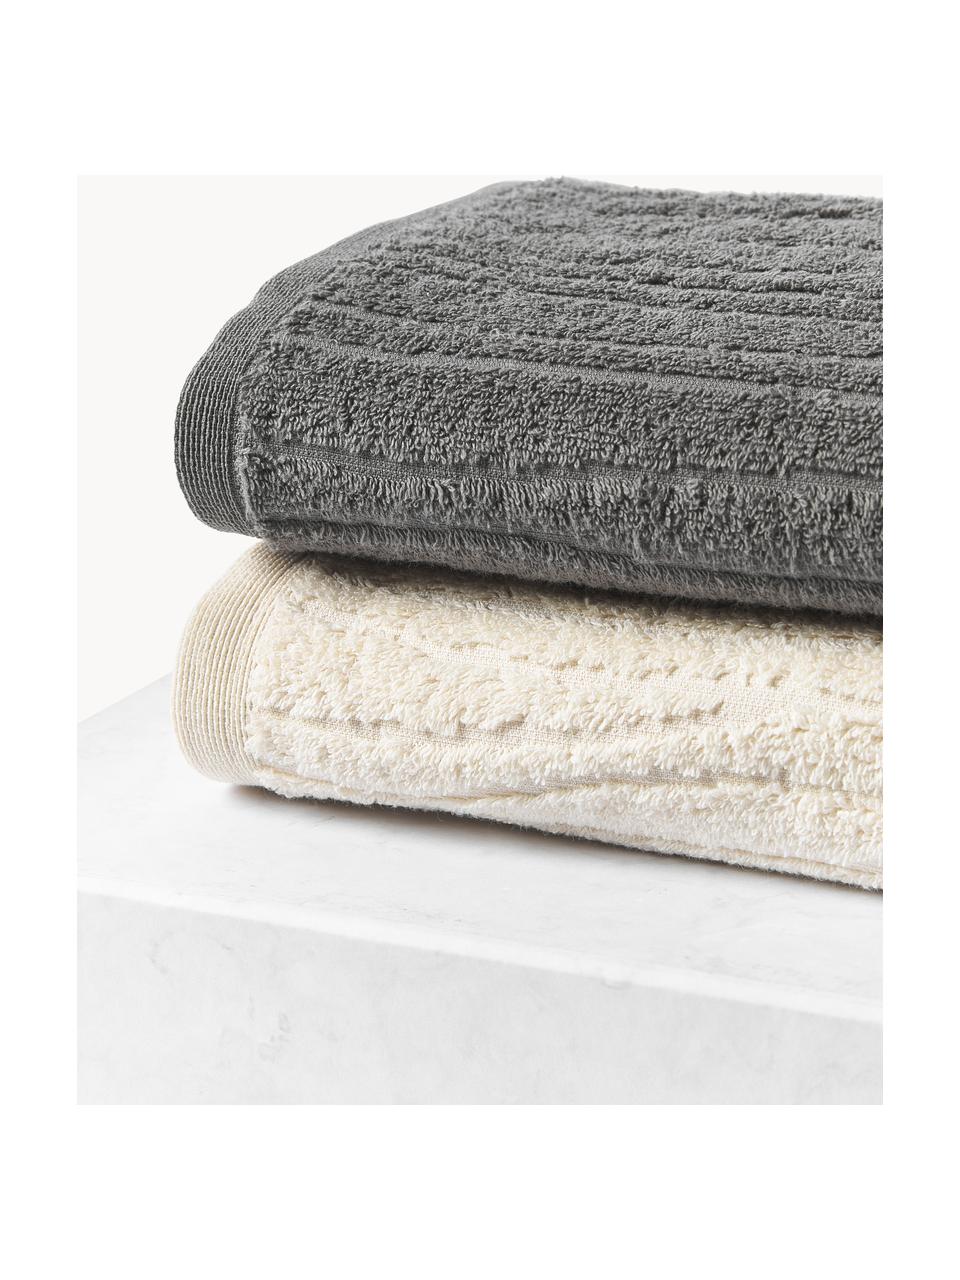 Lot de serviettes de bain en coton Audrina, tailles variées, Gris foncé, 3 éléments (1 serviette invité, 1 serviette de toilette et 1 drap de bain)